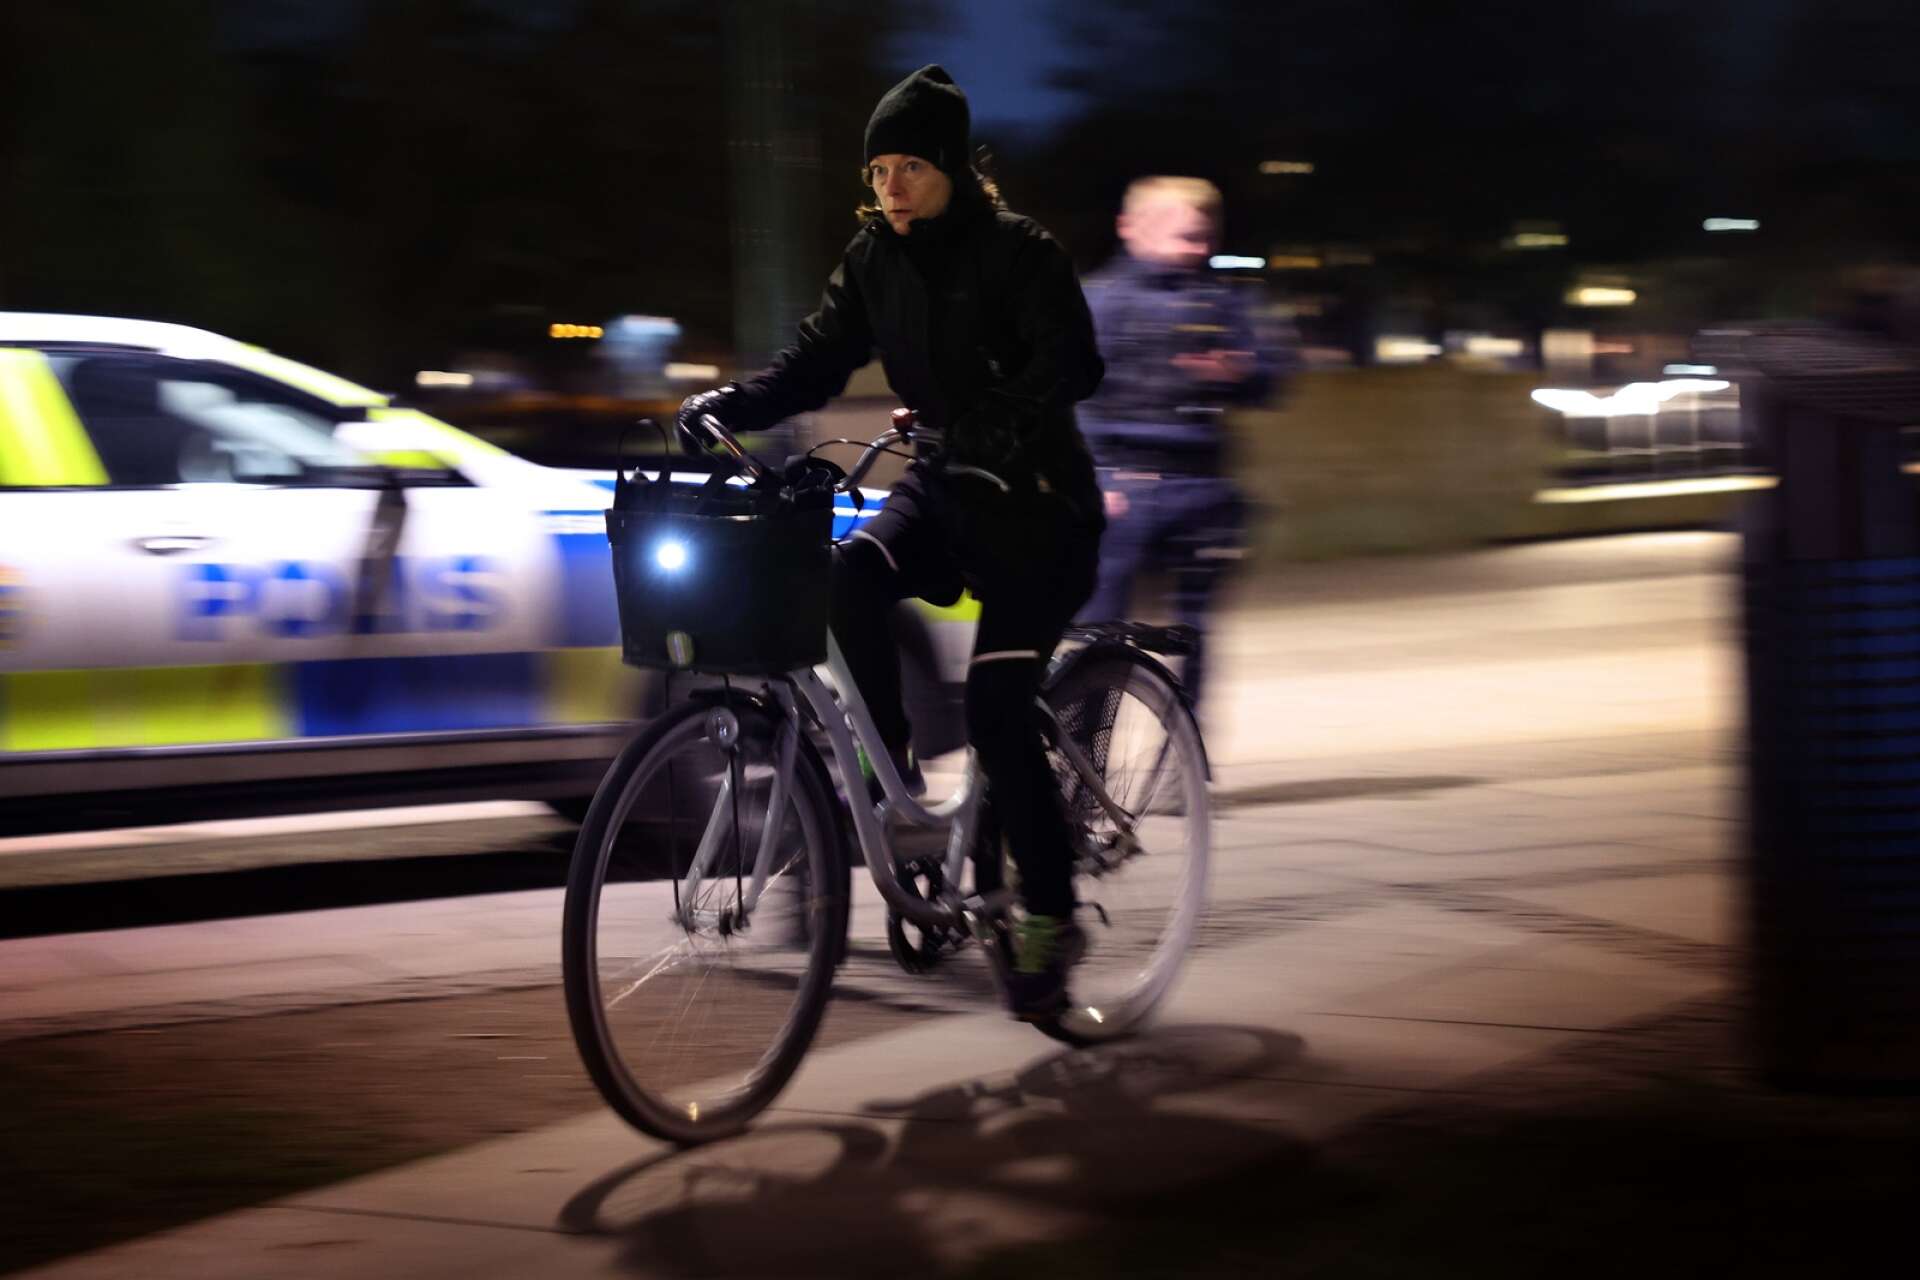 De flesta cyklisterna som kommer över Torgbron i Lidköping när polisen har cykelkontroll har belysning både fram och bak på cykeln. 